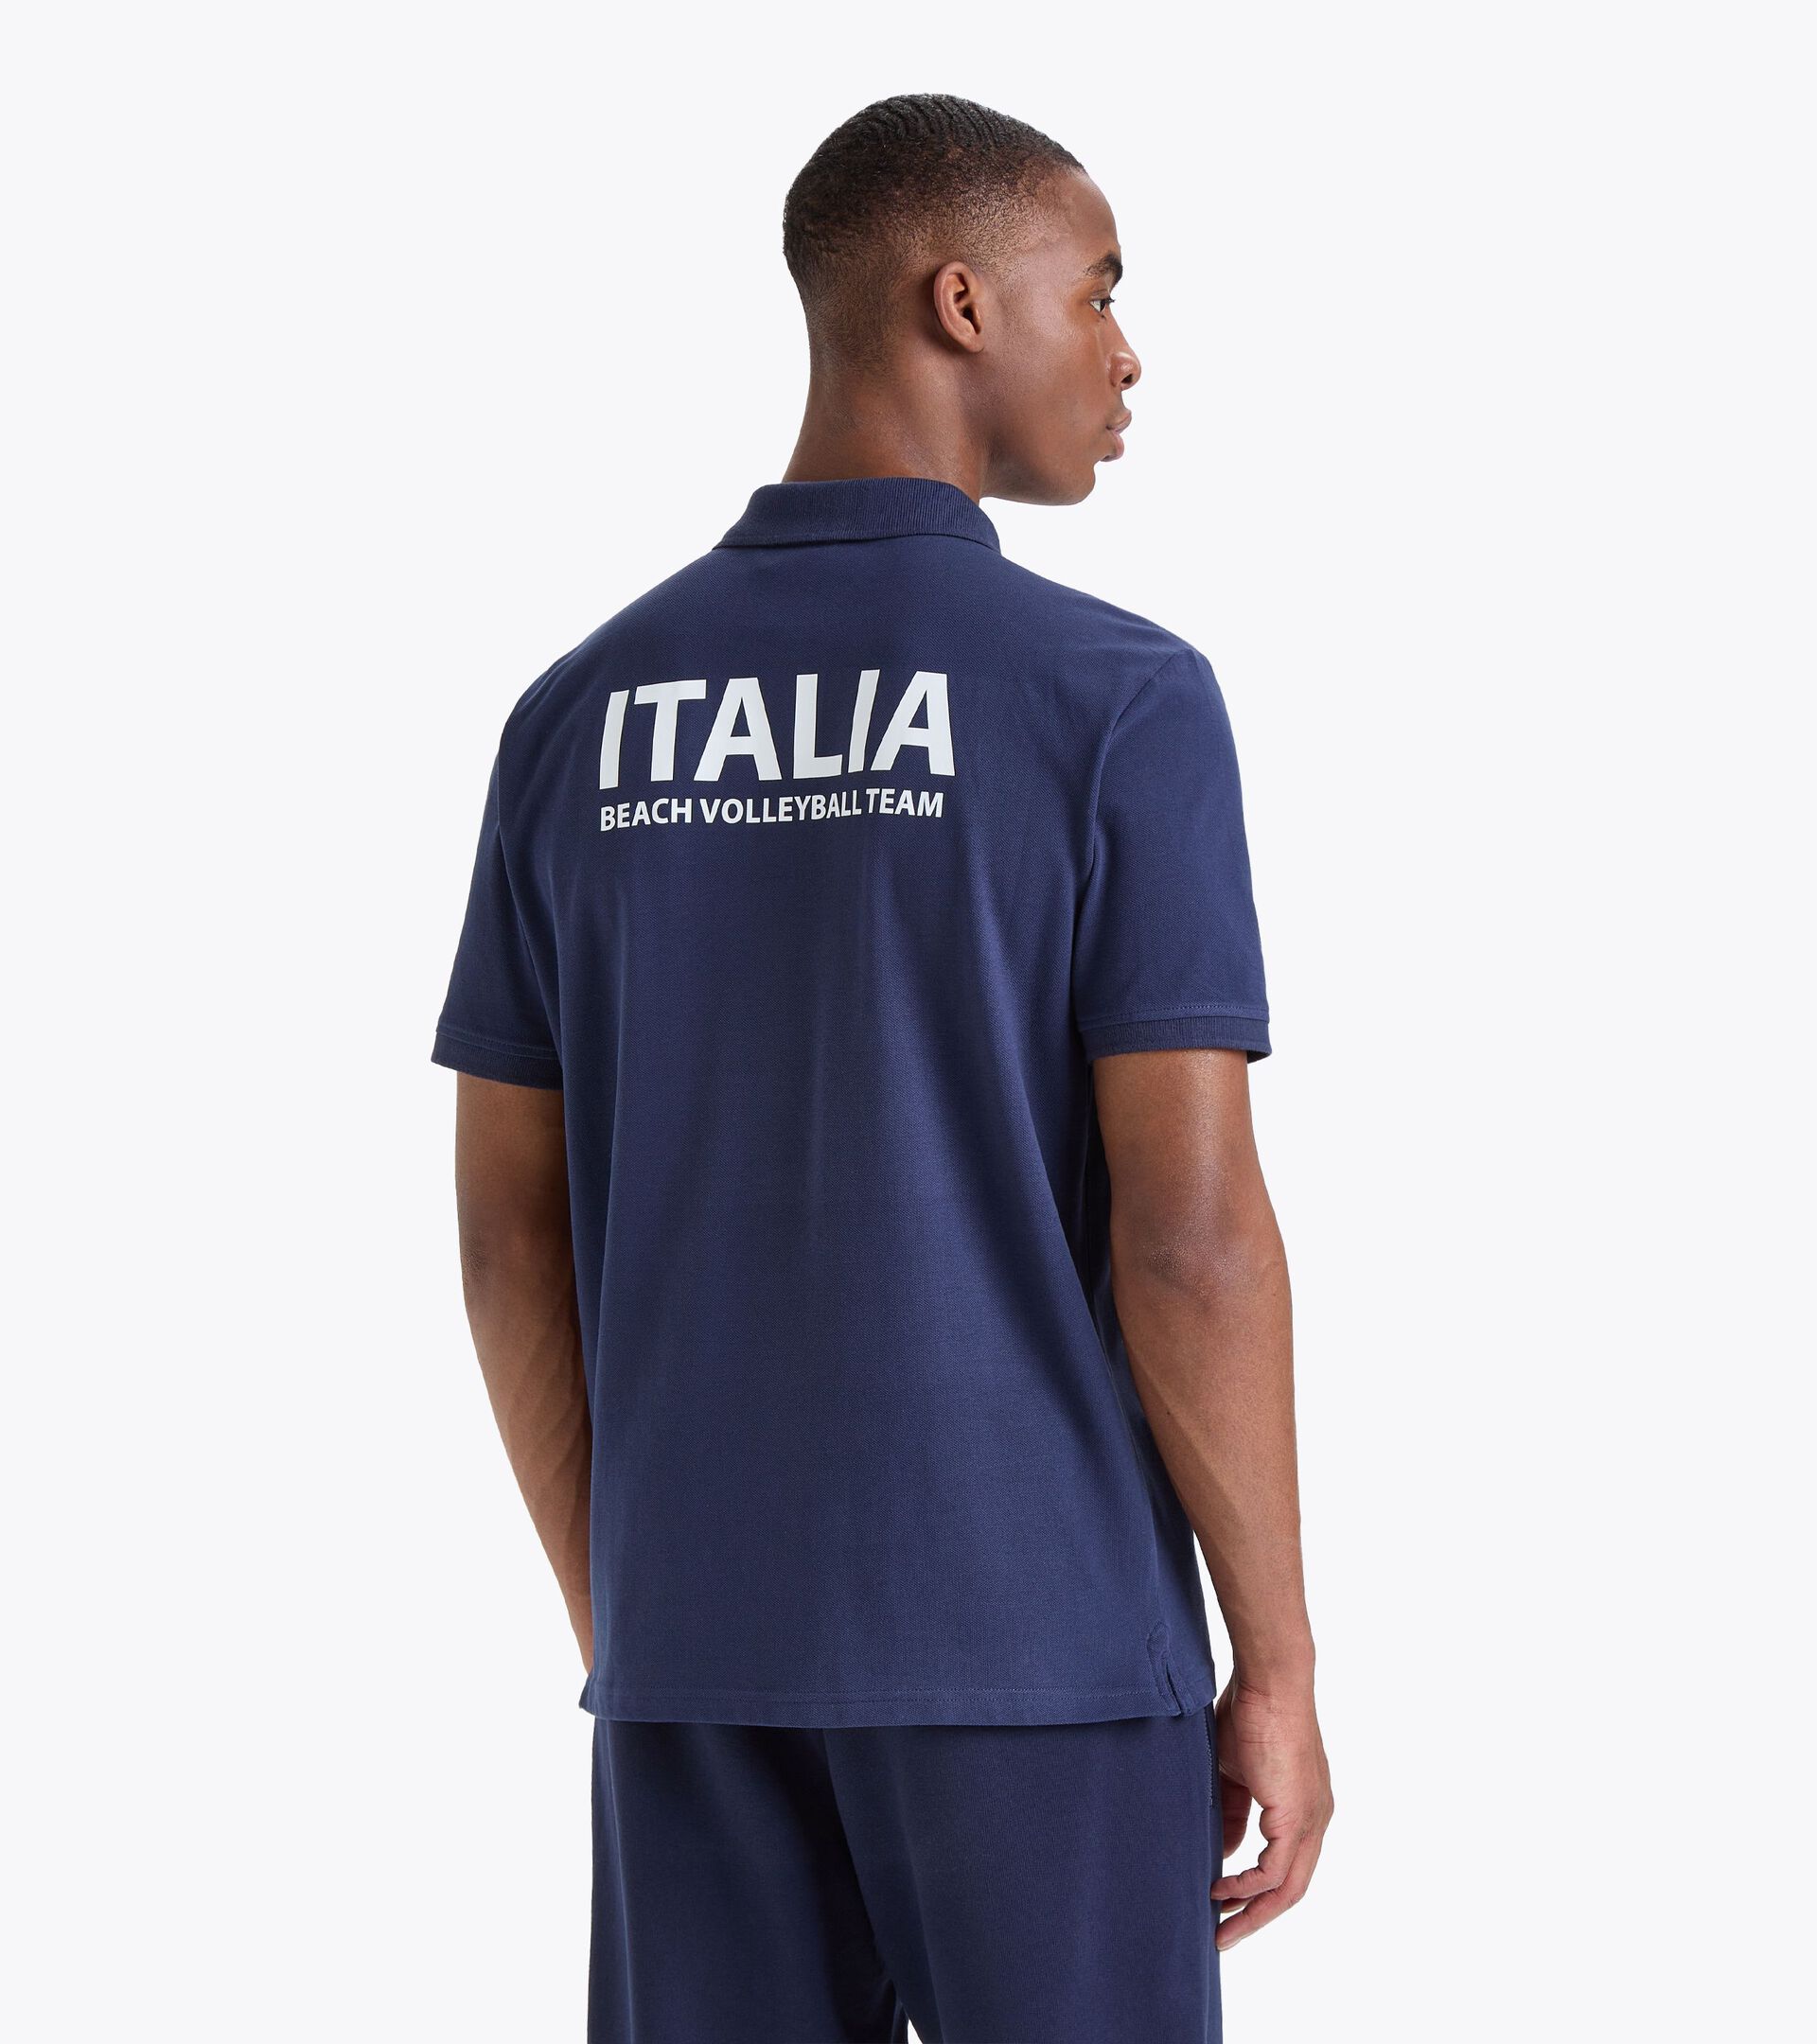 Polo shirt - Italy National Volleyball Team POLO RAPPRESENTANZA BV23 ITALIA CLASSIC NAVY - Diadora